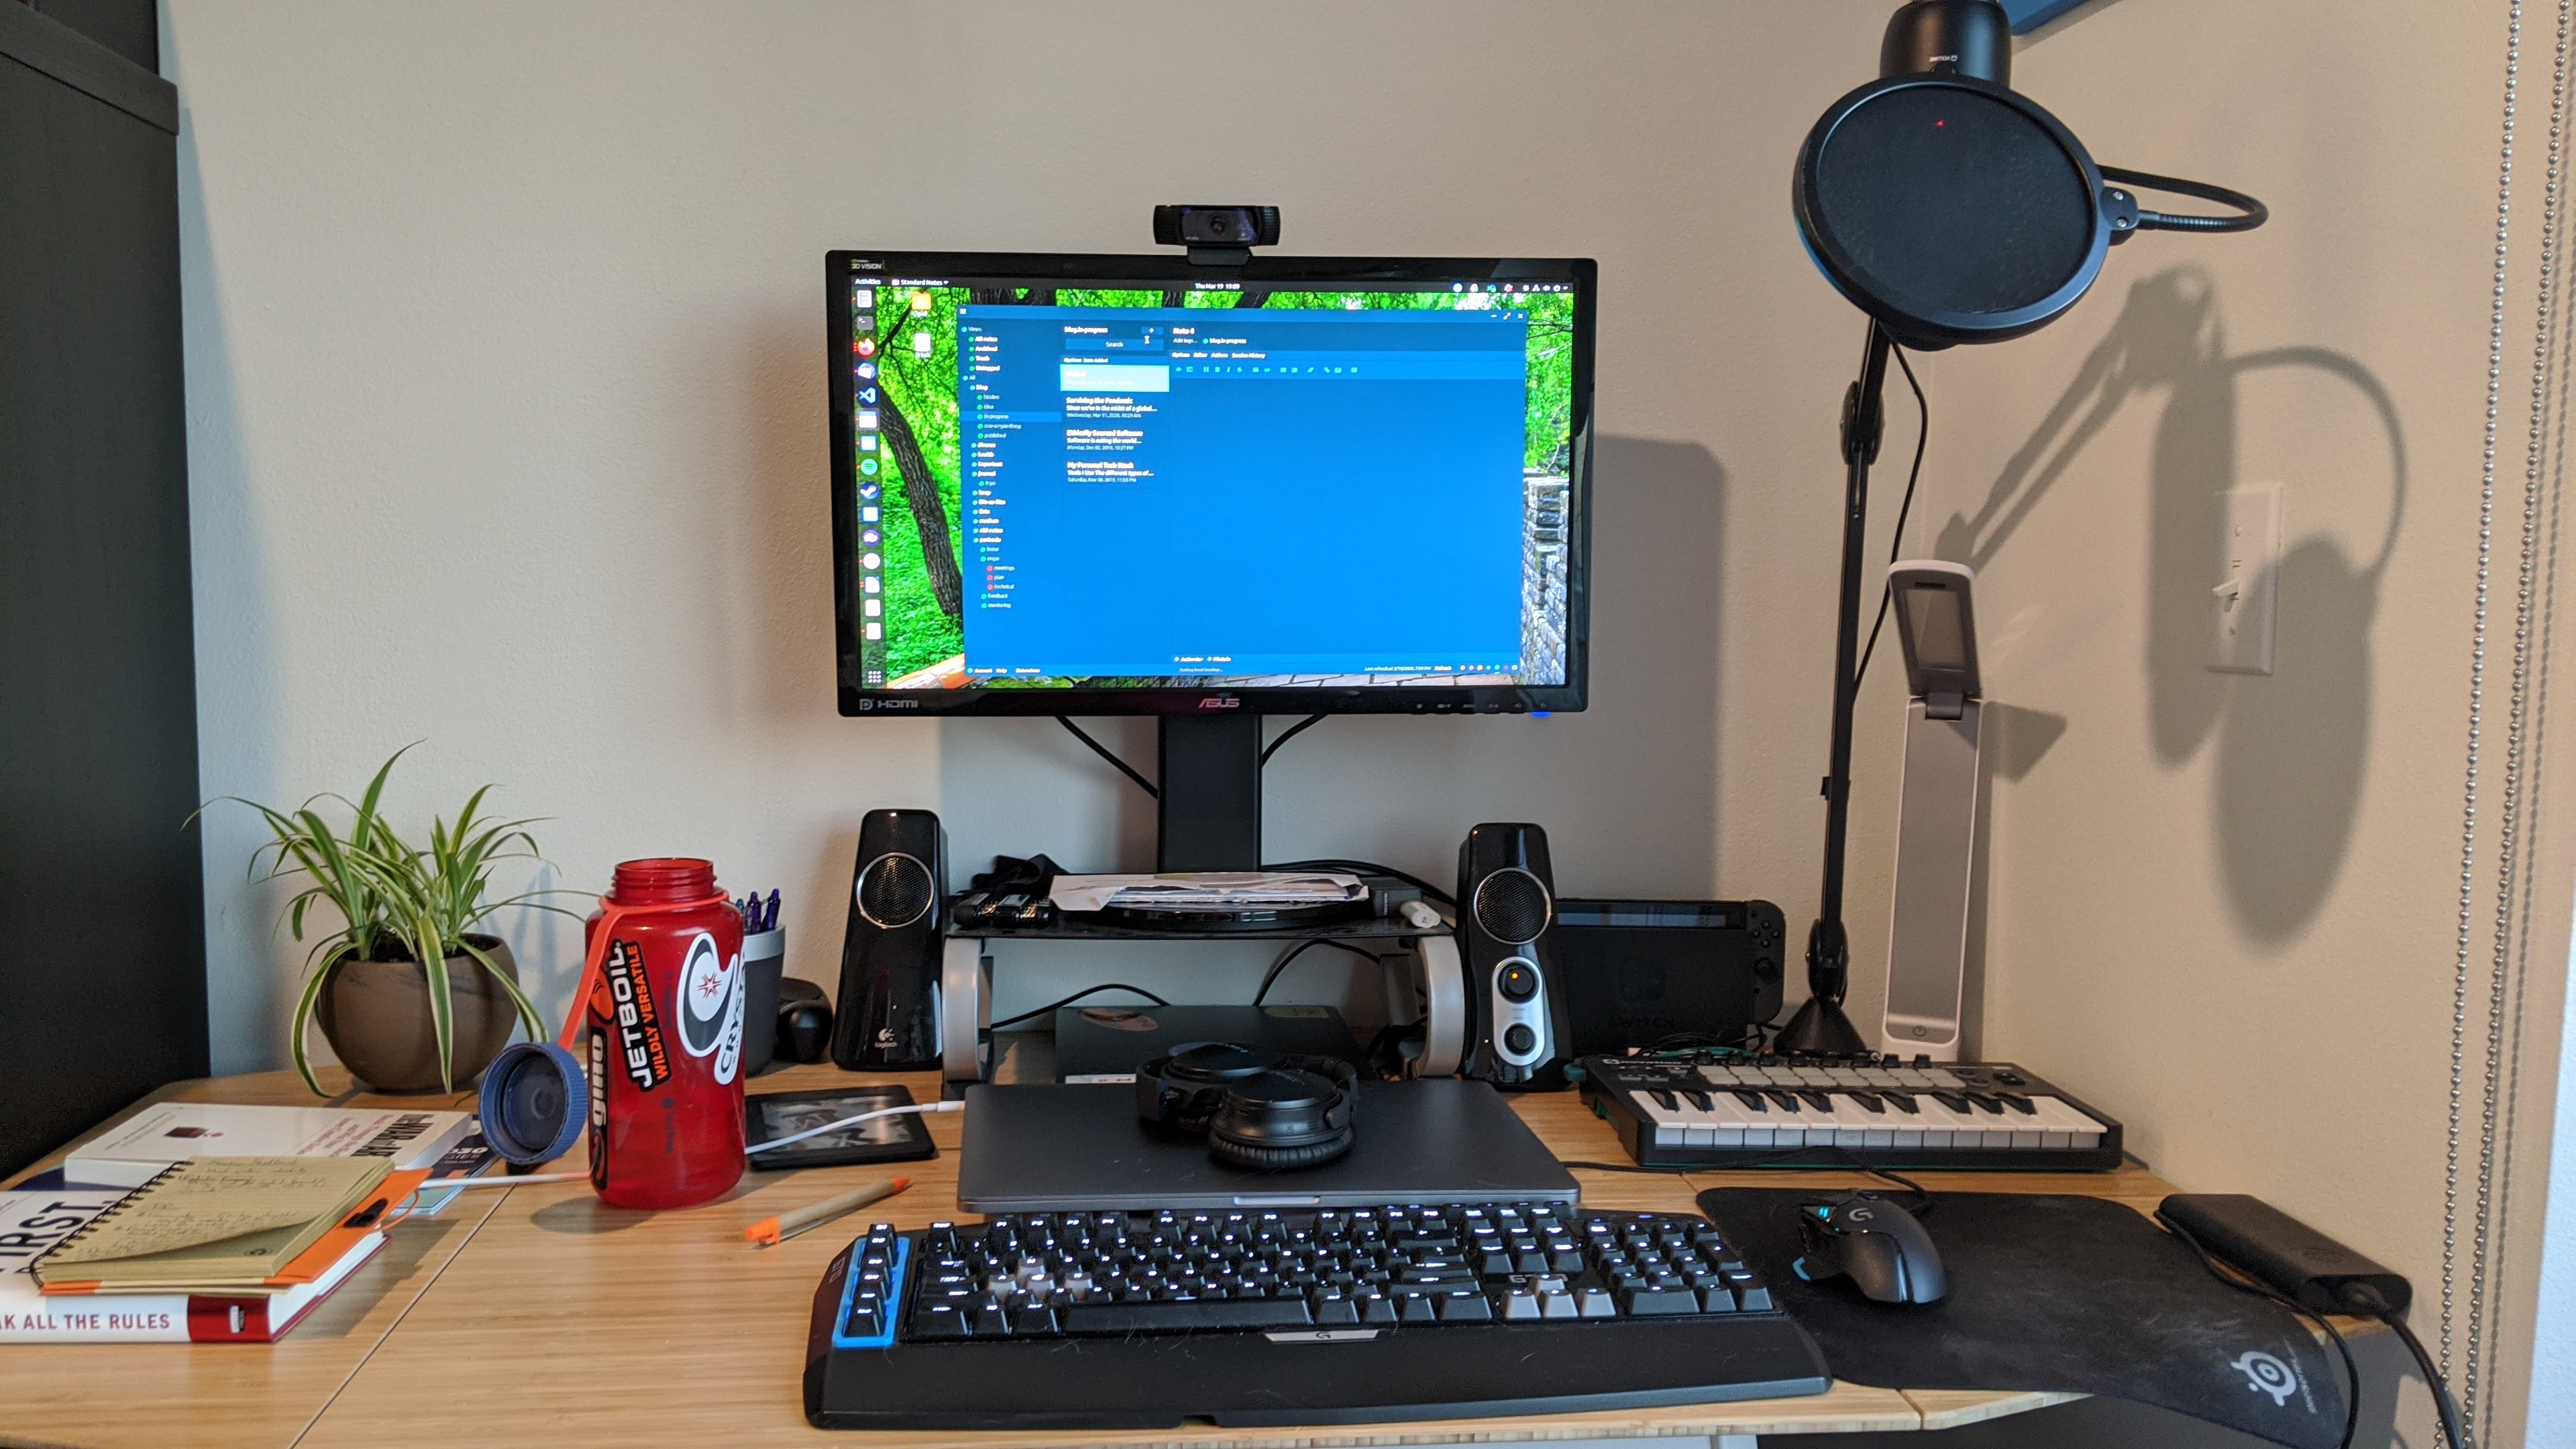 My current desk setup